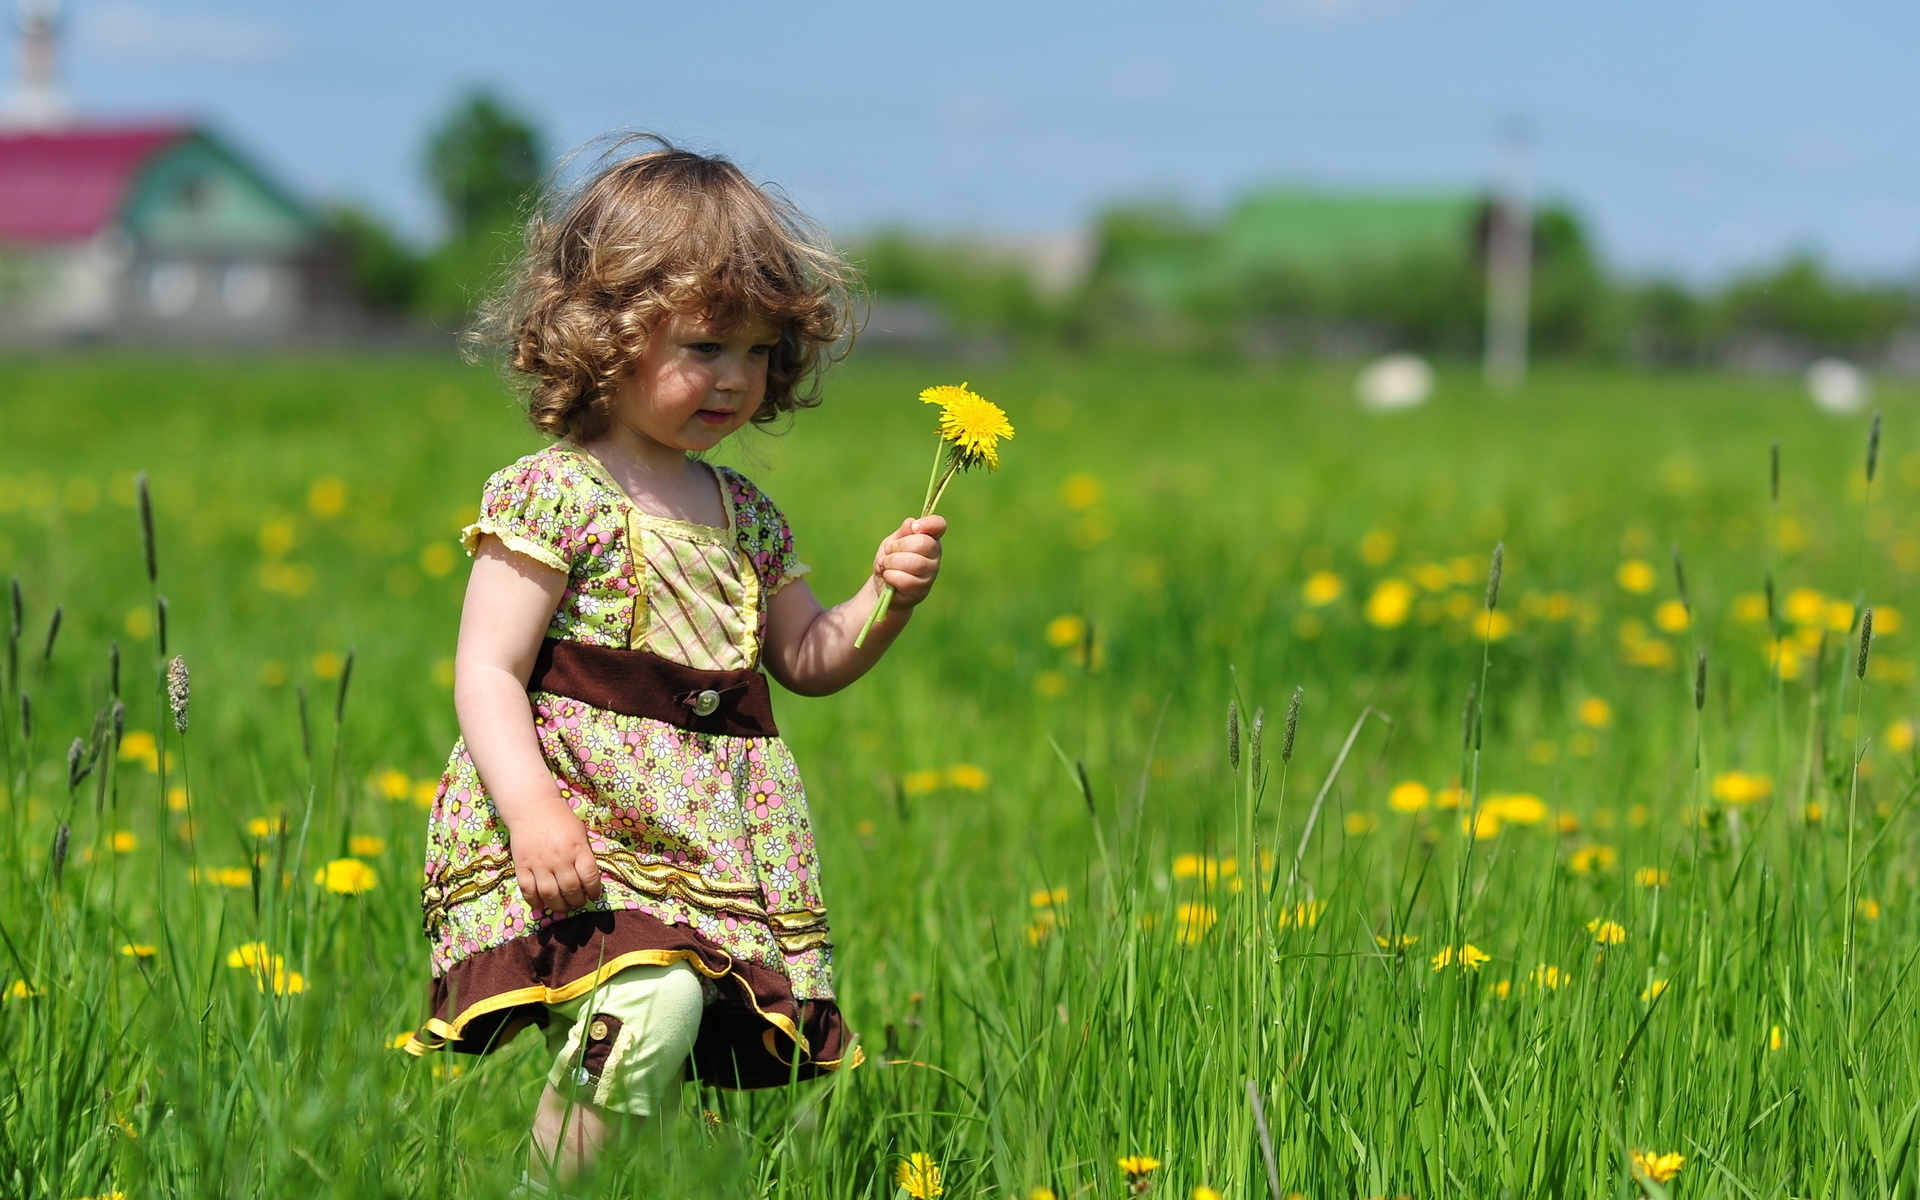 Картинки Ребенок, девушка, трава, поле, цветы, прогулка, платье, волосы фото и обои на рабочий стол